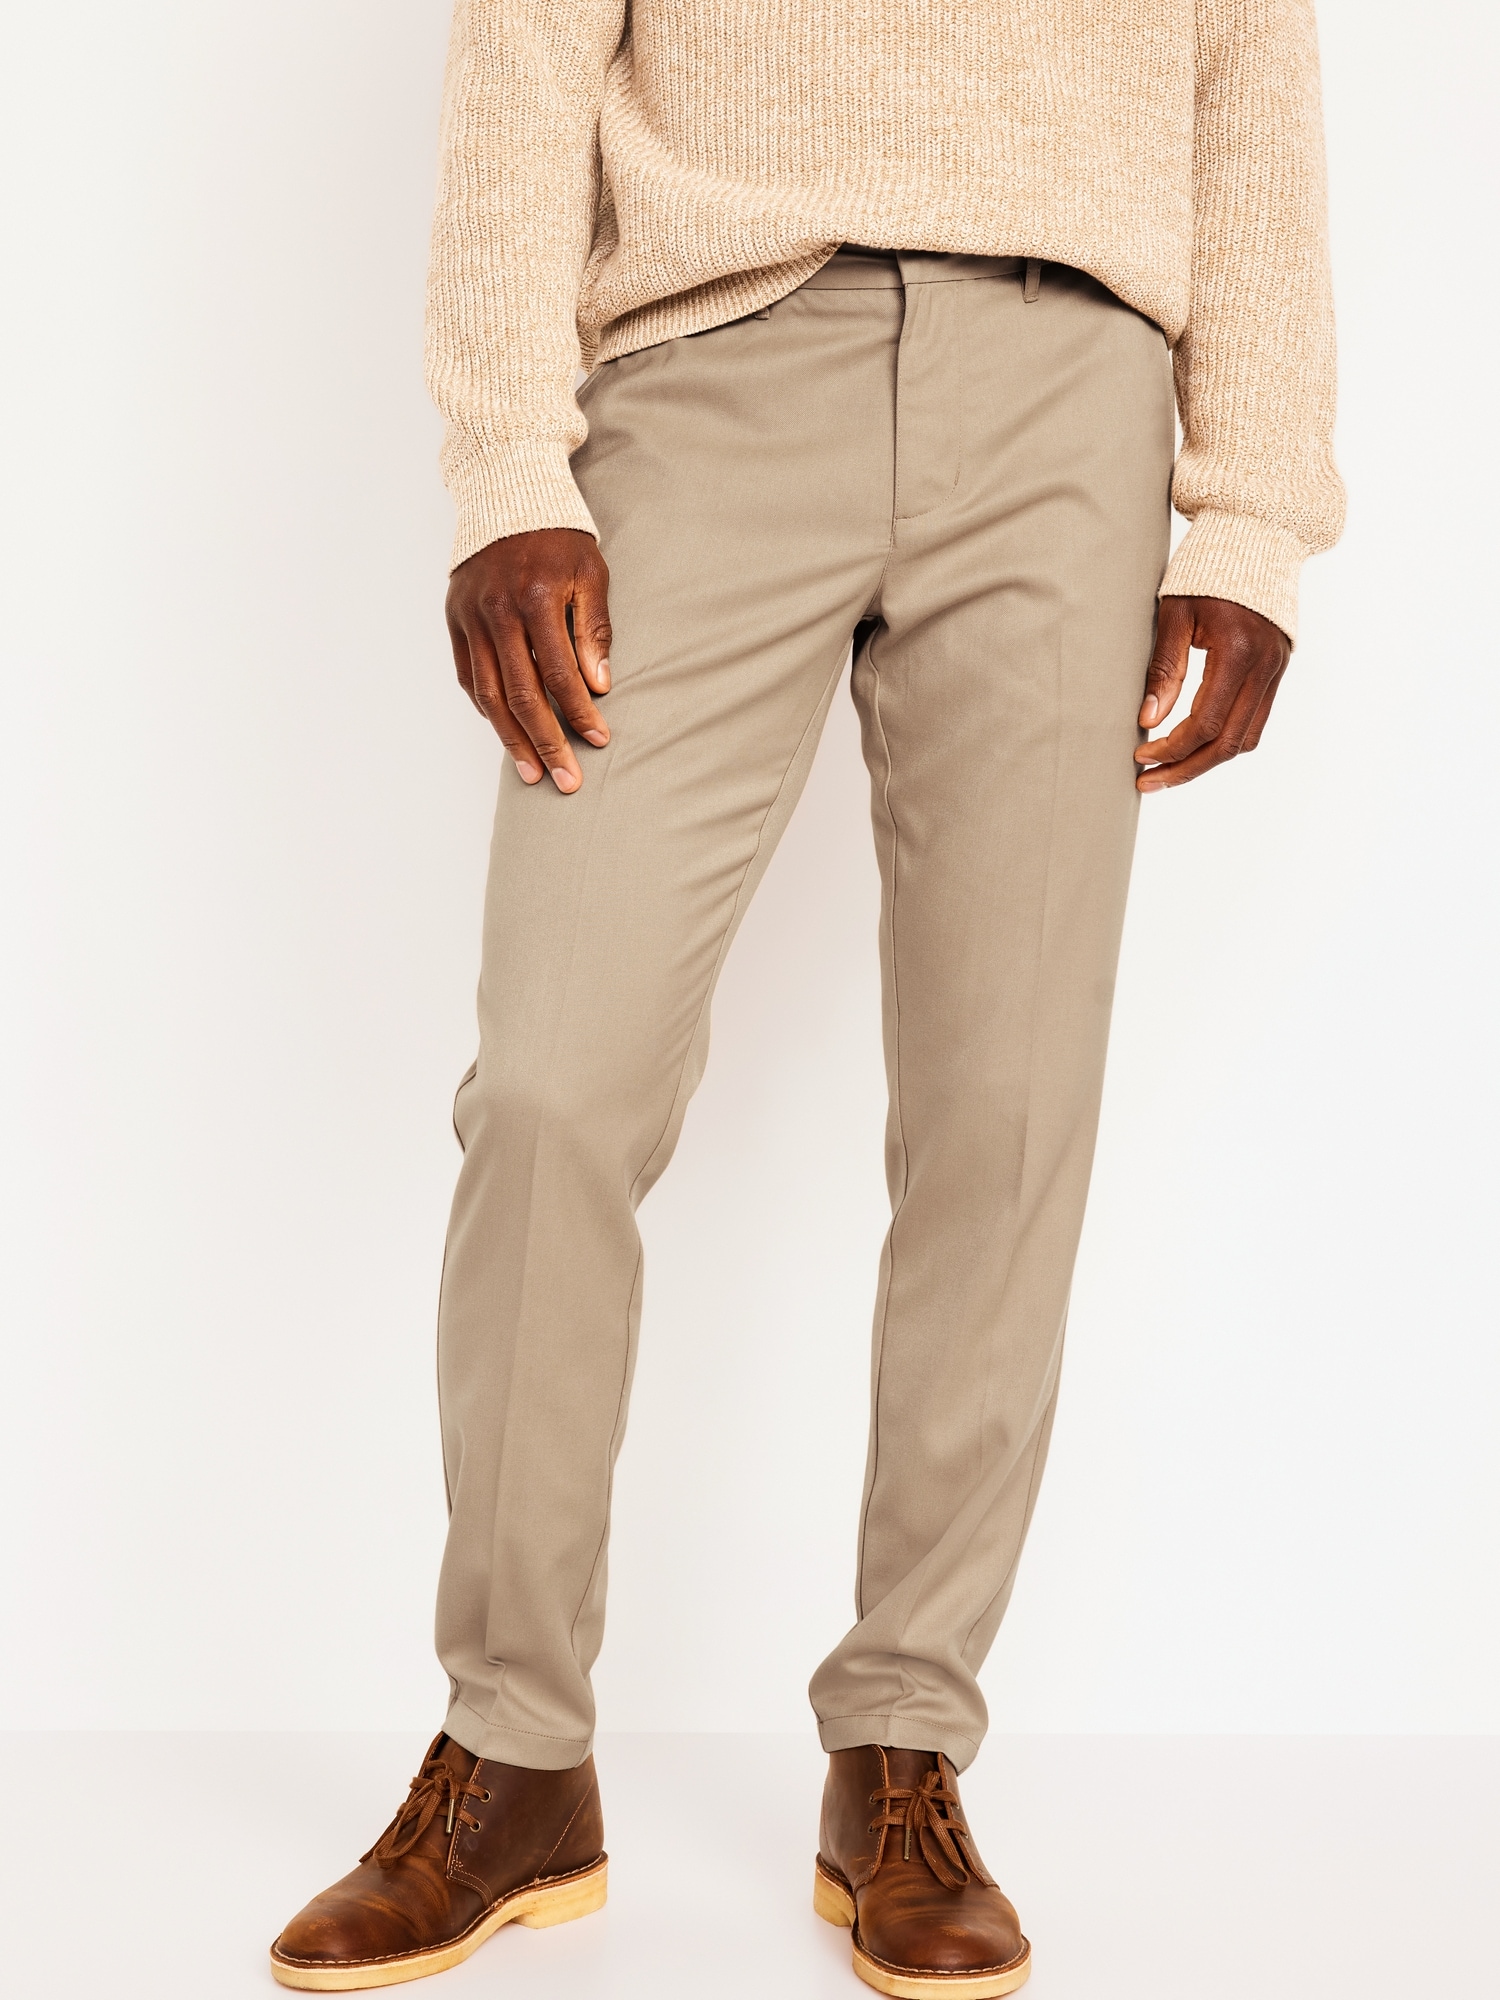 Men's Formal Trouser Review | online Shopping tips | Fashion, comfort |  shopping guruji - YouTube